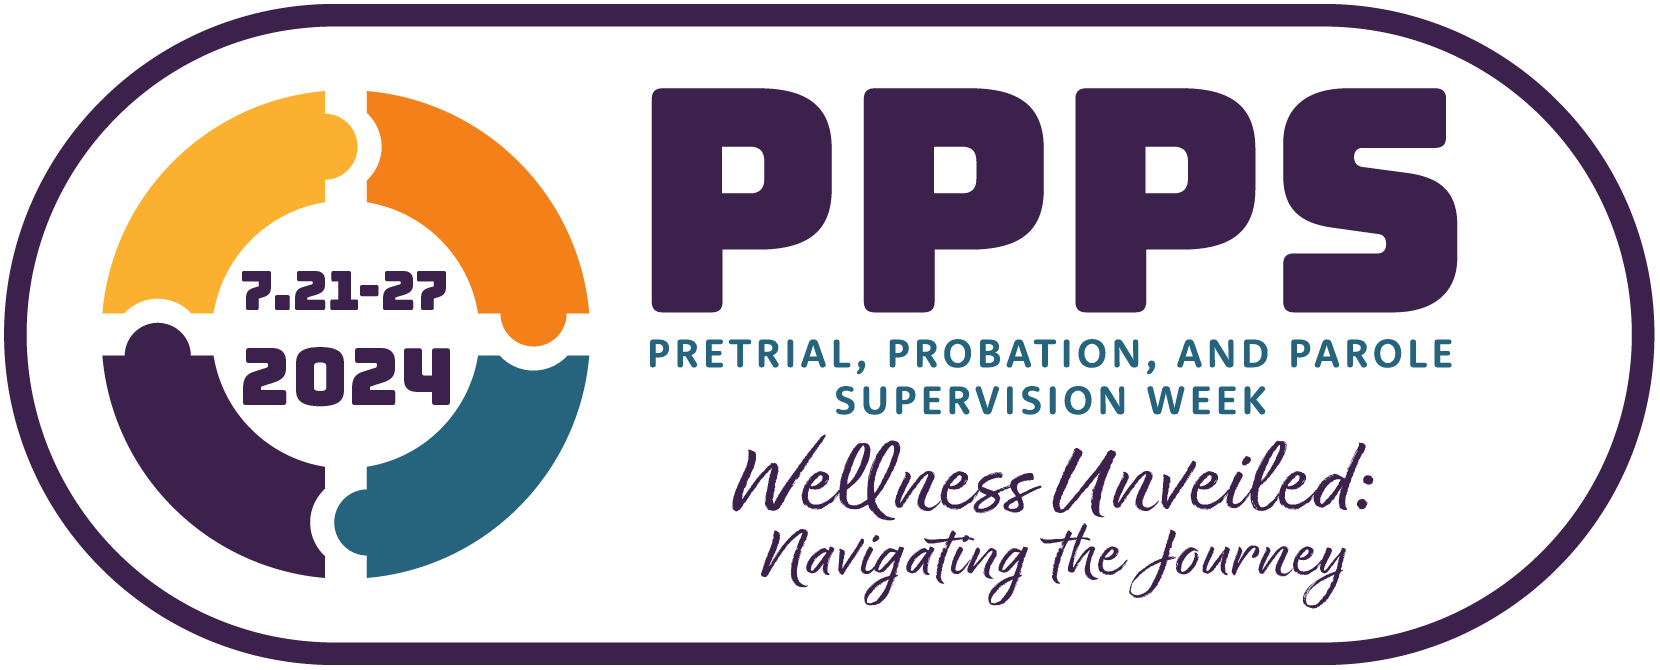 PPPS Week - July 21-27, 2024